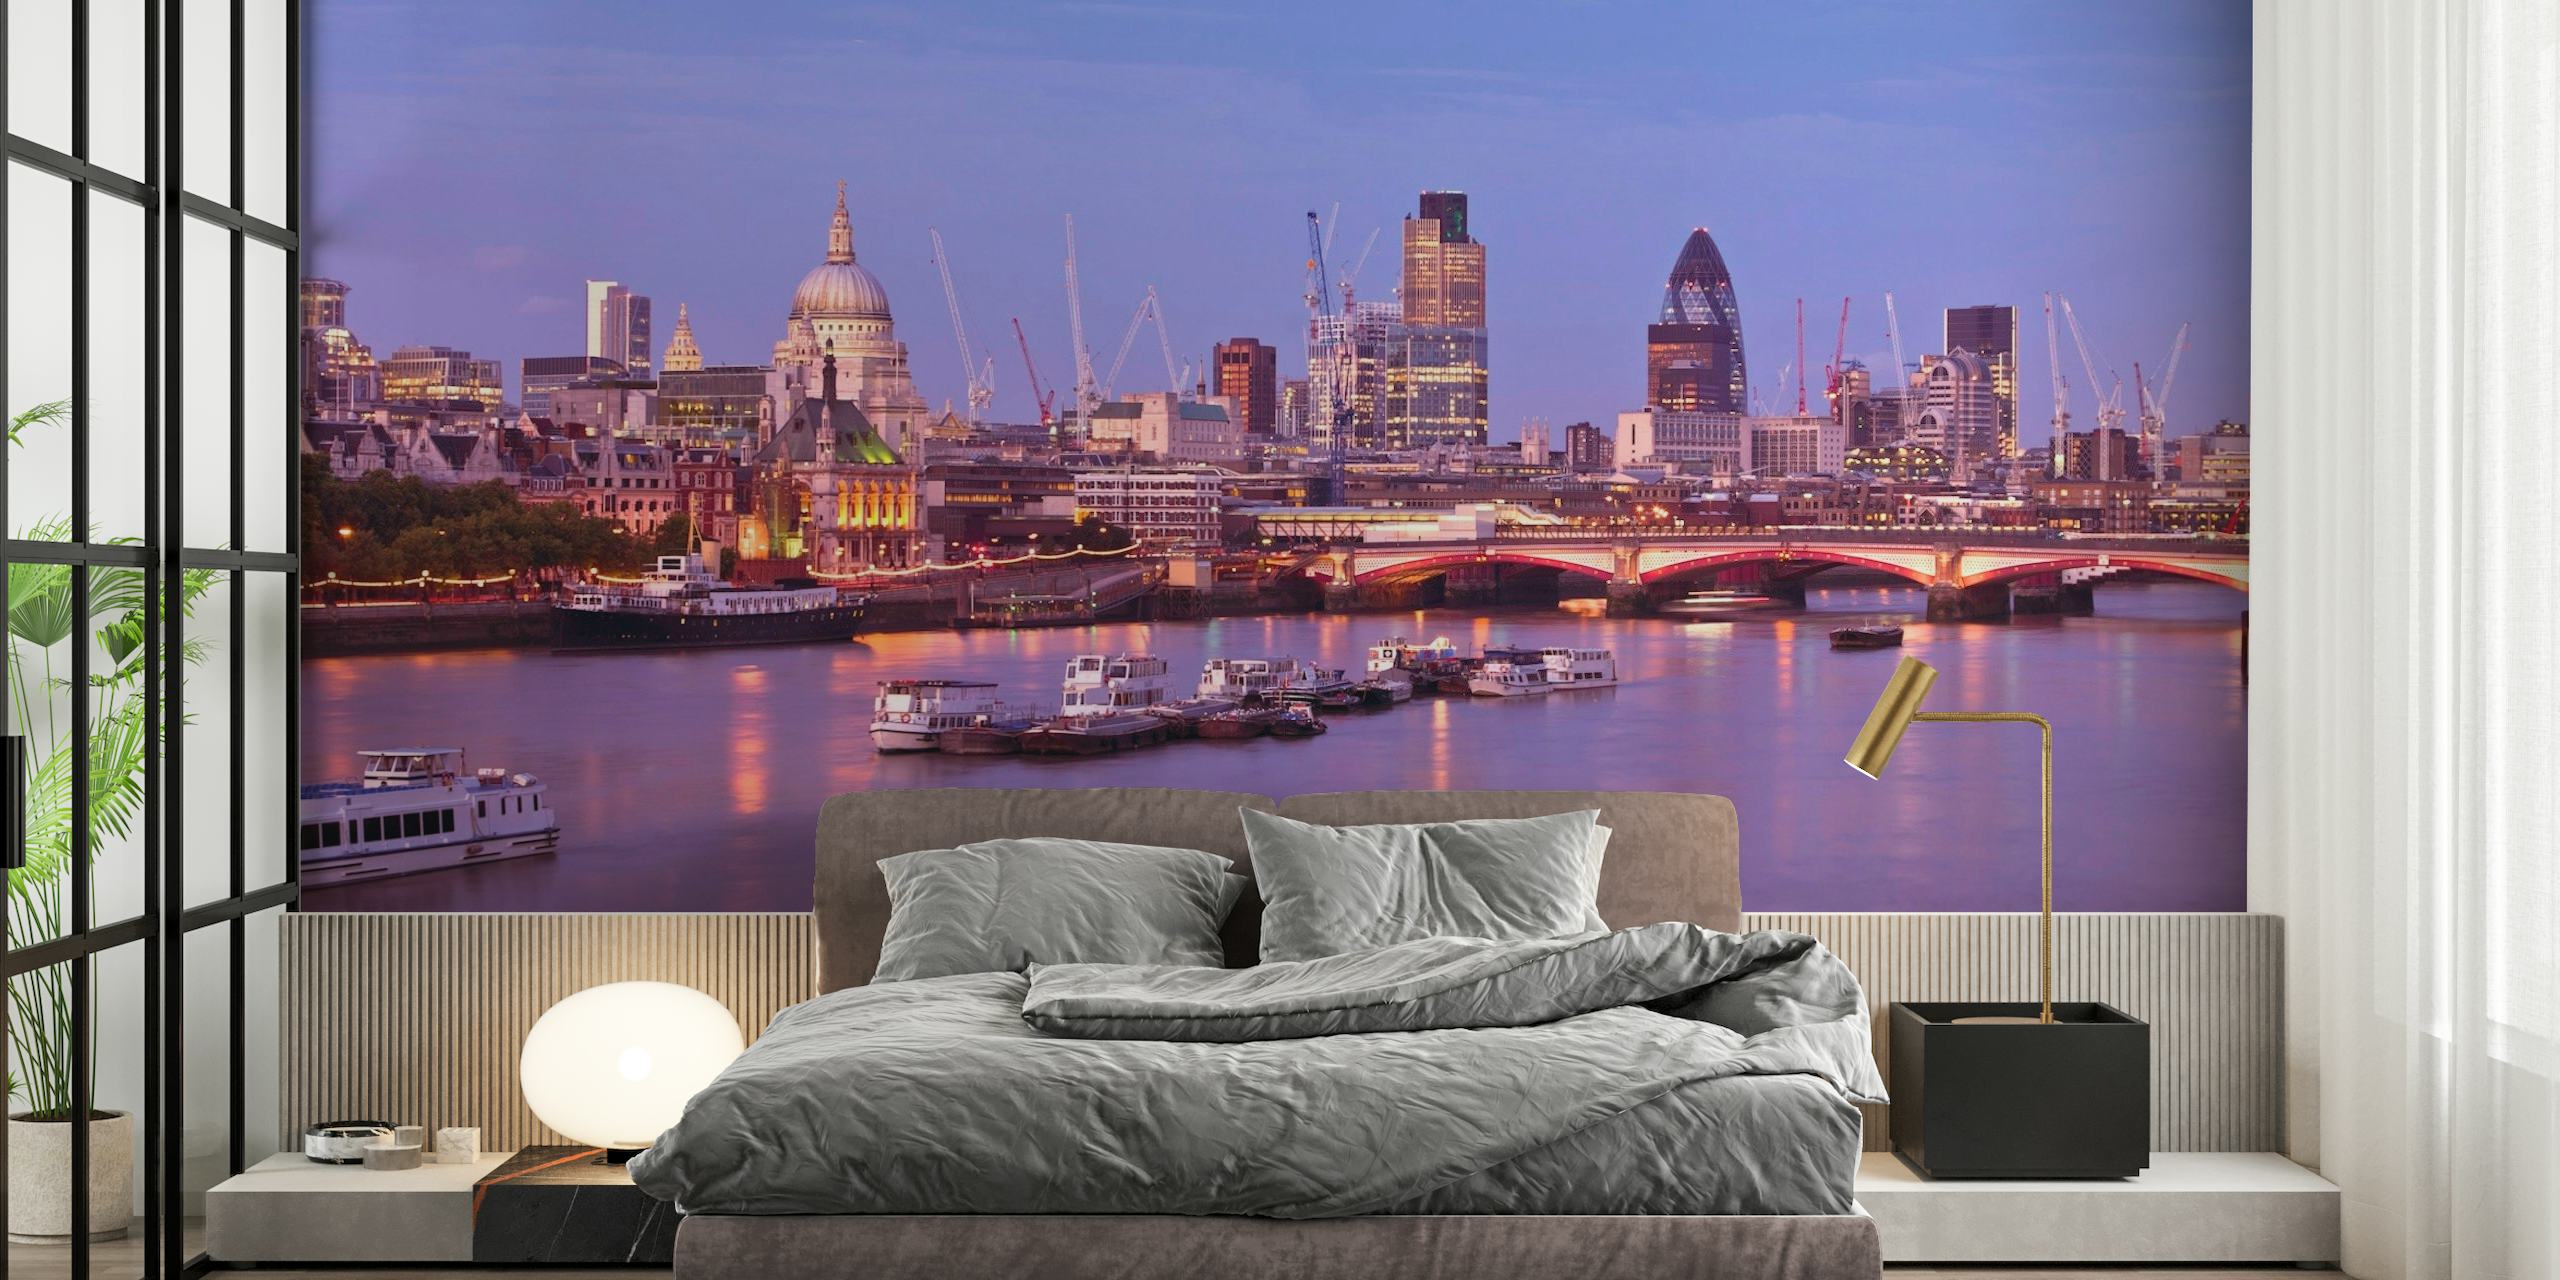 Vægmaleri af Themsen i London i skumringen med byens skyline